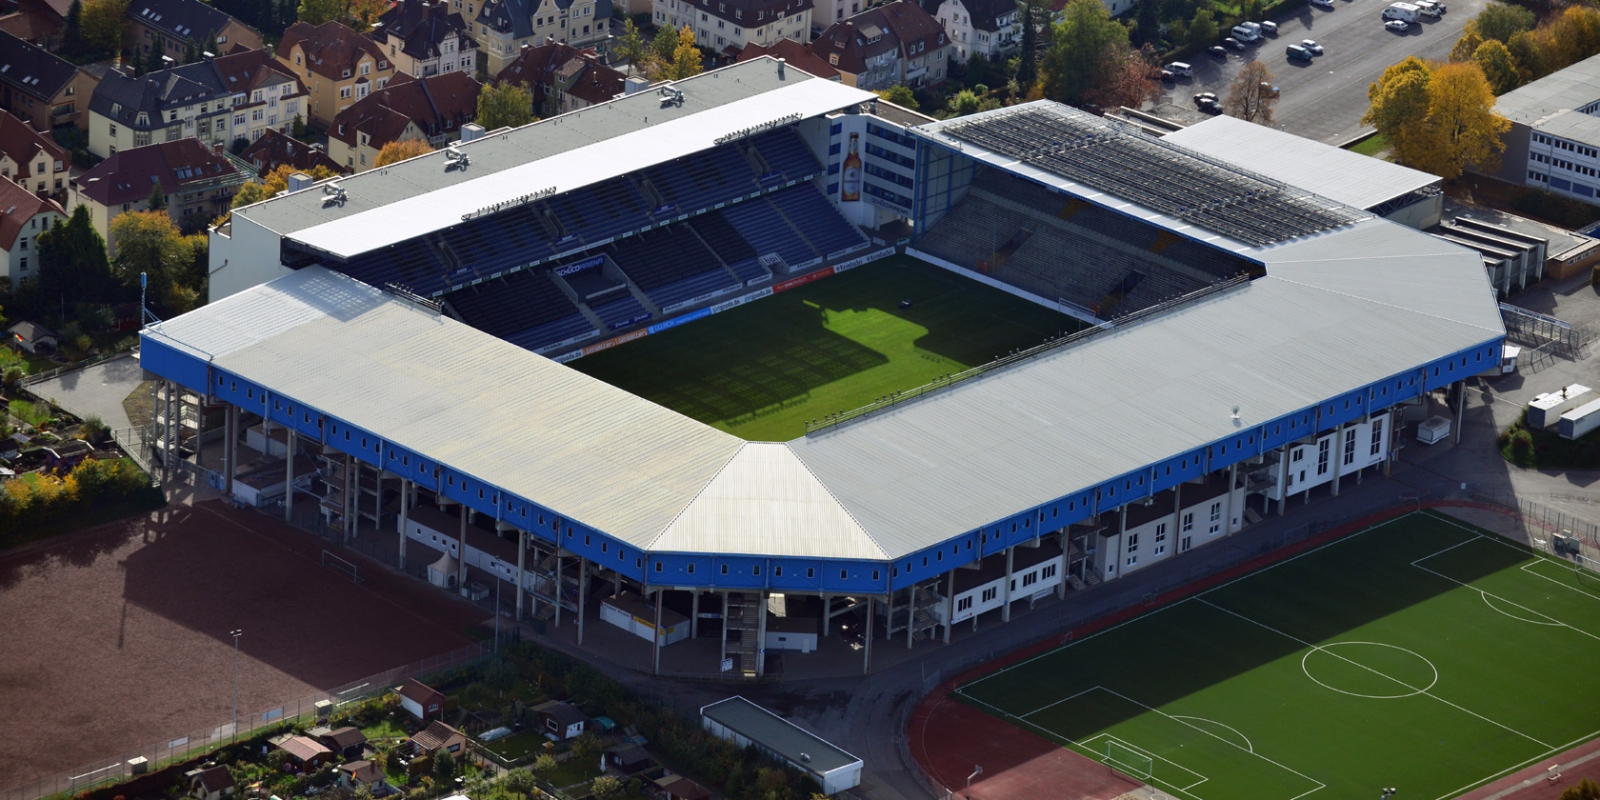 Stadion Bielefeld aus der Vogelperspektive